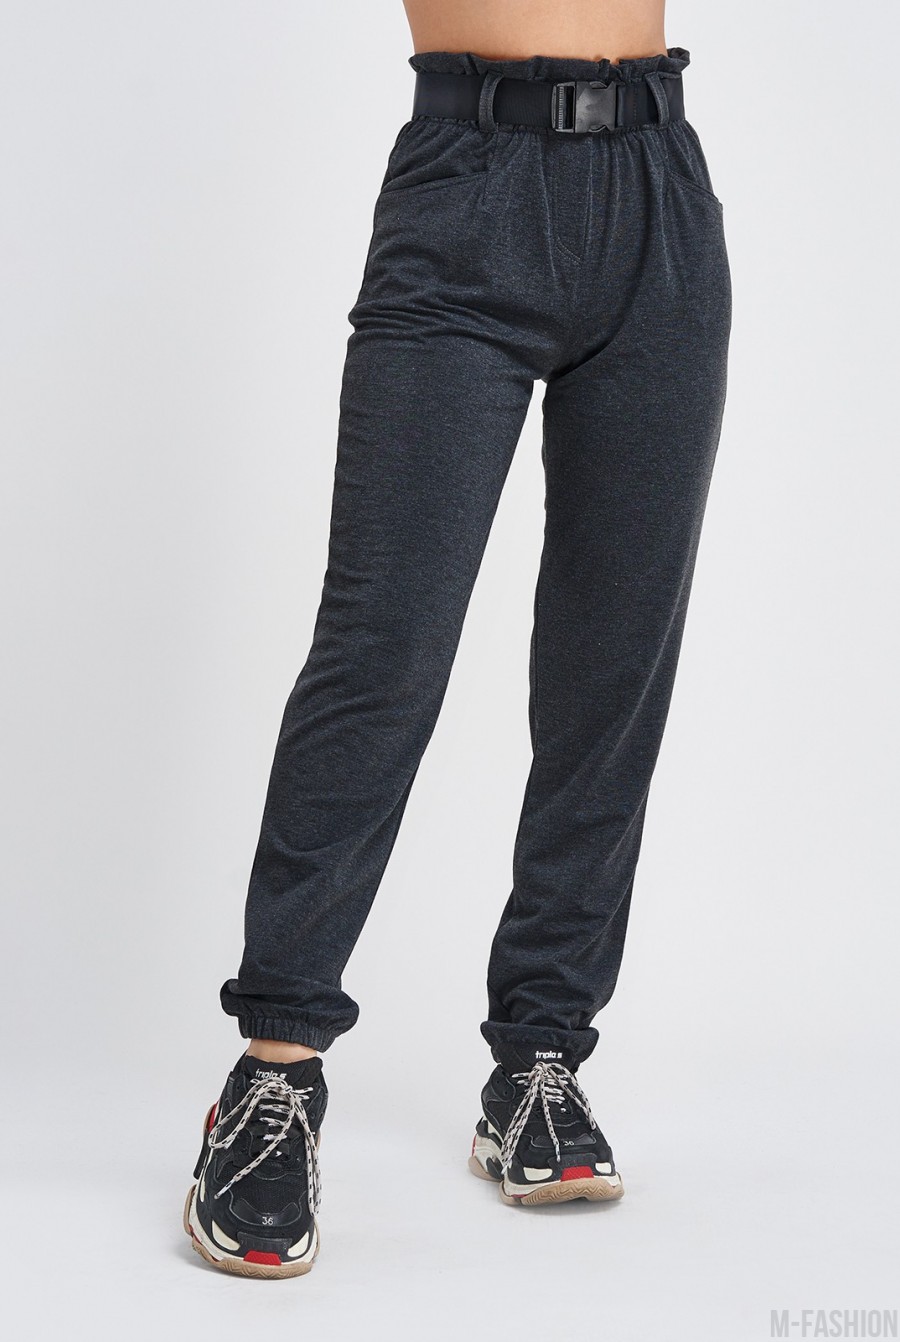 Темно-серые трикотажные брюки с высокой посадкой - Фото 1